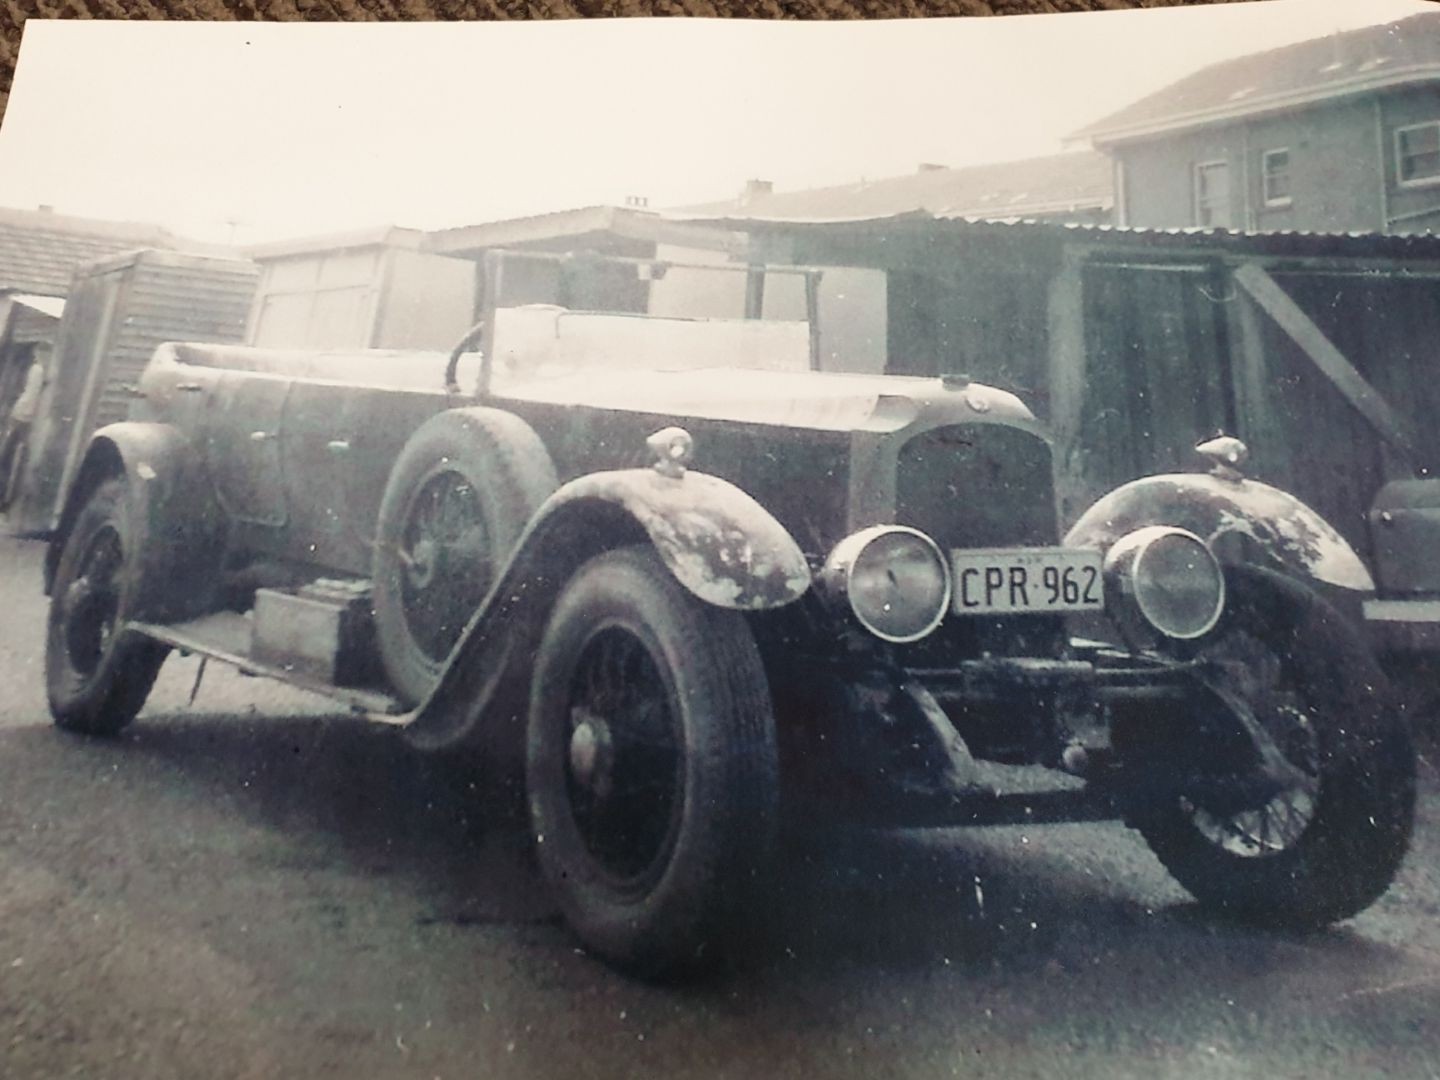 1924 Vauxhall 23/60